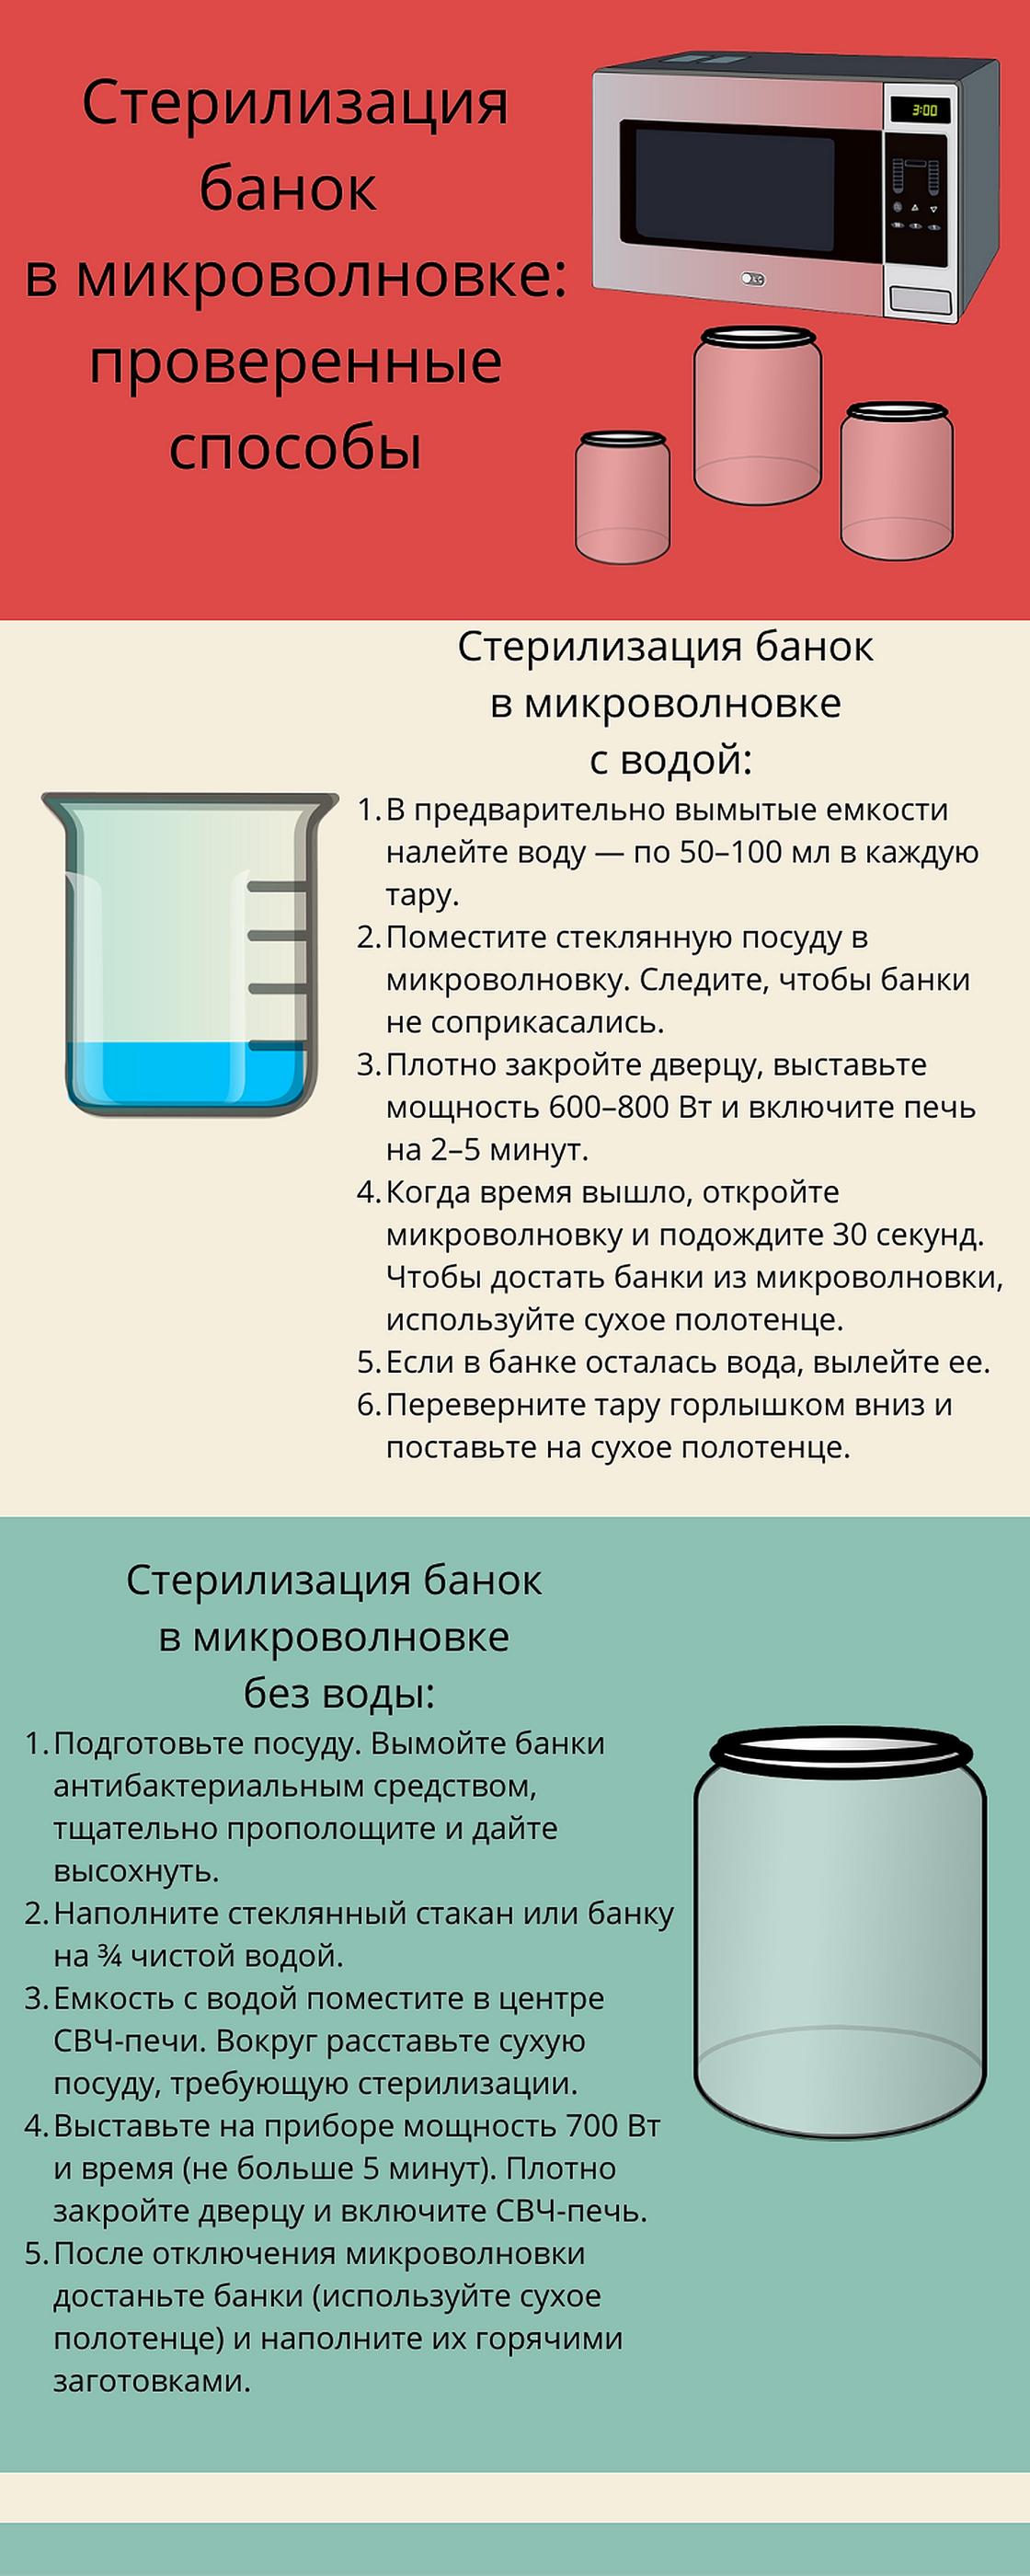 Инфографика: стерилизация банок в микроволновке